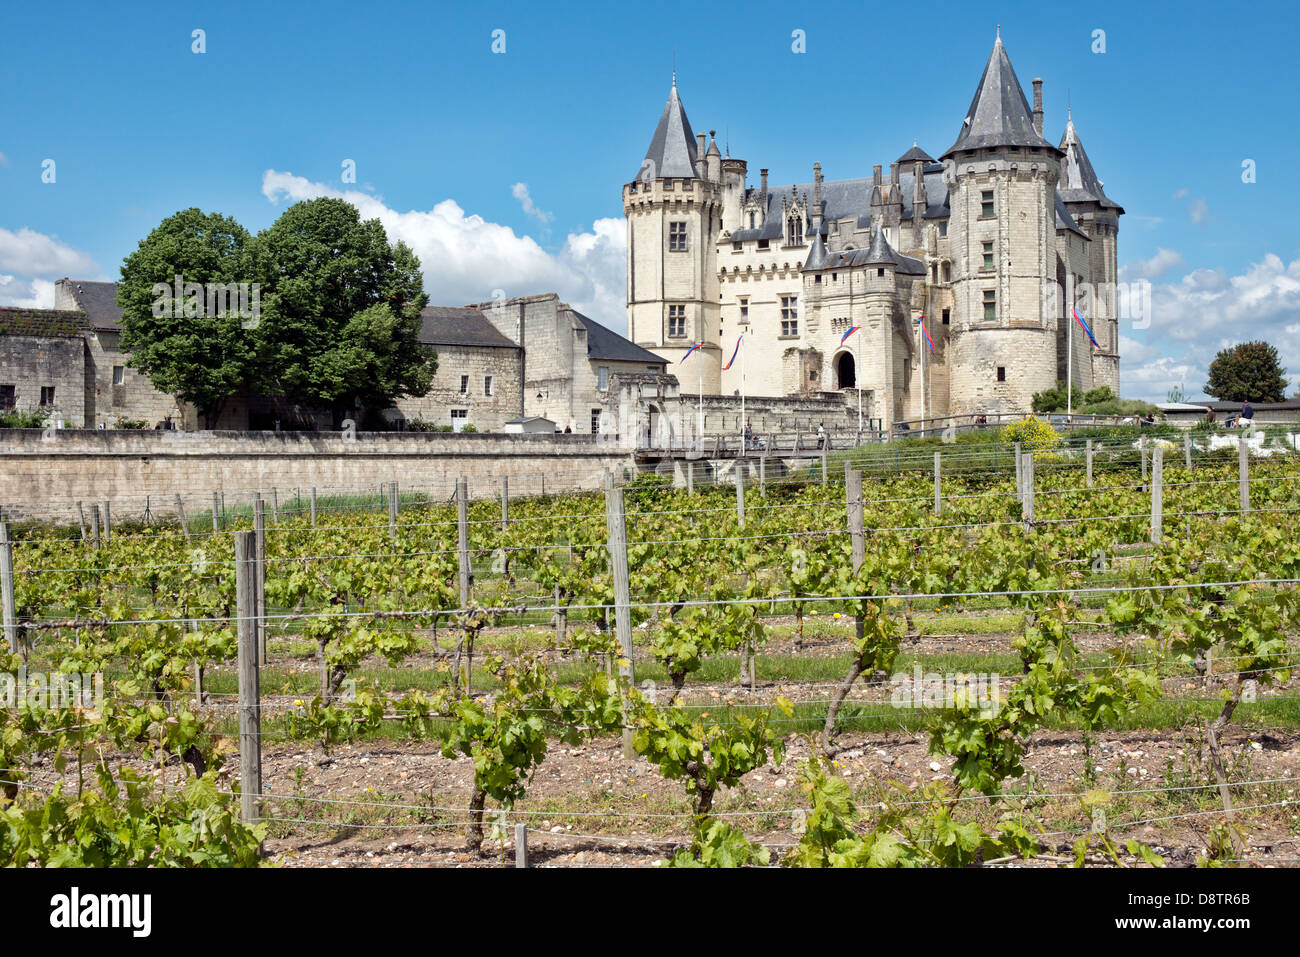 Le mûrissement des vignes dans le vignoble en face de l'historique Château de Saumur. Dans la vallée de la Loire, France Banque D'Images